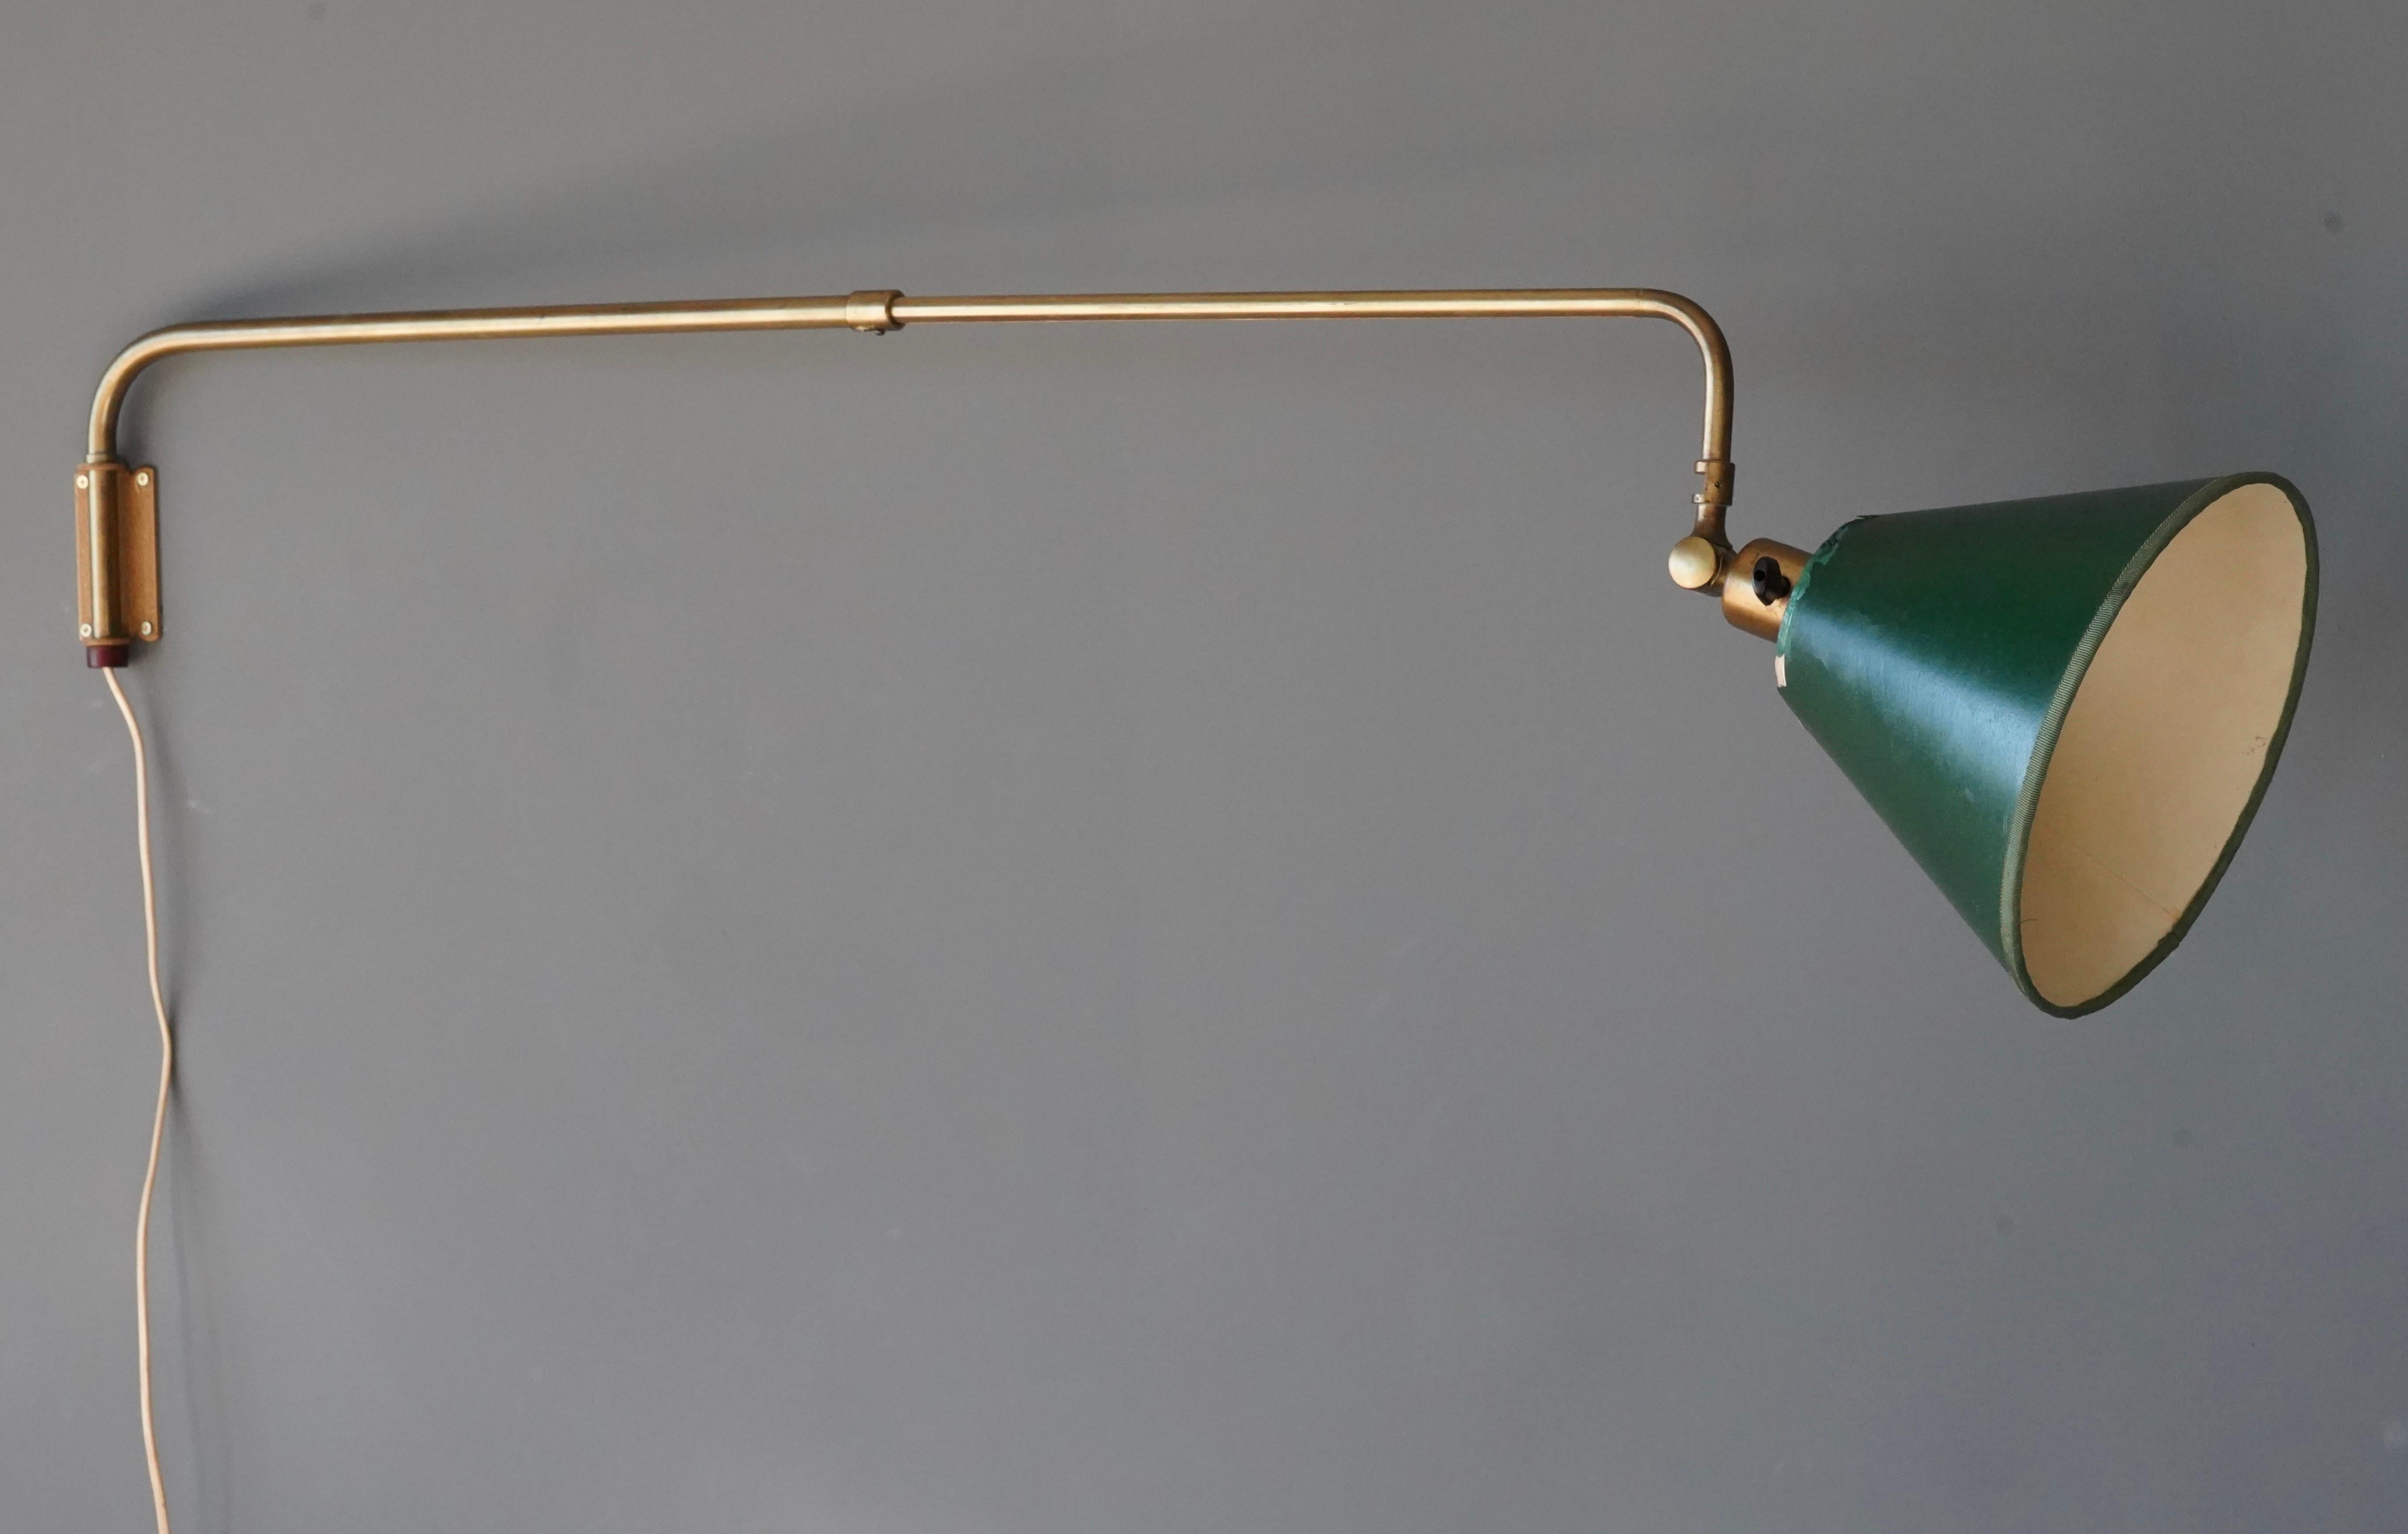 Eine verstellbare organische Wandleuchte. Aus Messing, mit einem Vintage-Lampenschirm, wahrscheinlich original, aus grün lackiertem Stoff.

Die Abmessungen sind wie abgebildet an der kürzesten Stelle. Die Breite kann auf zusätzliche 16 Zoll